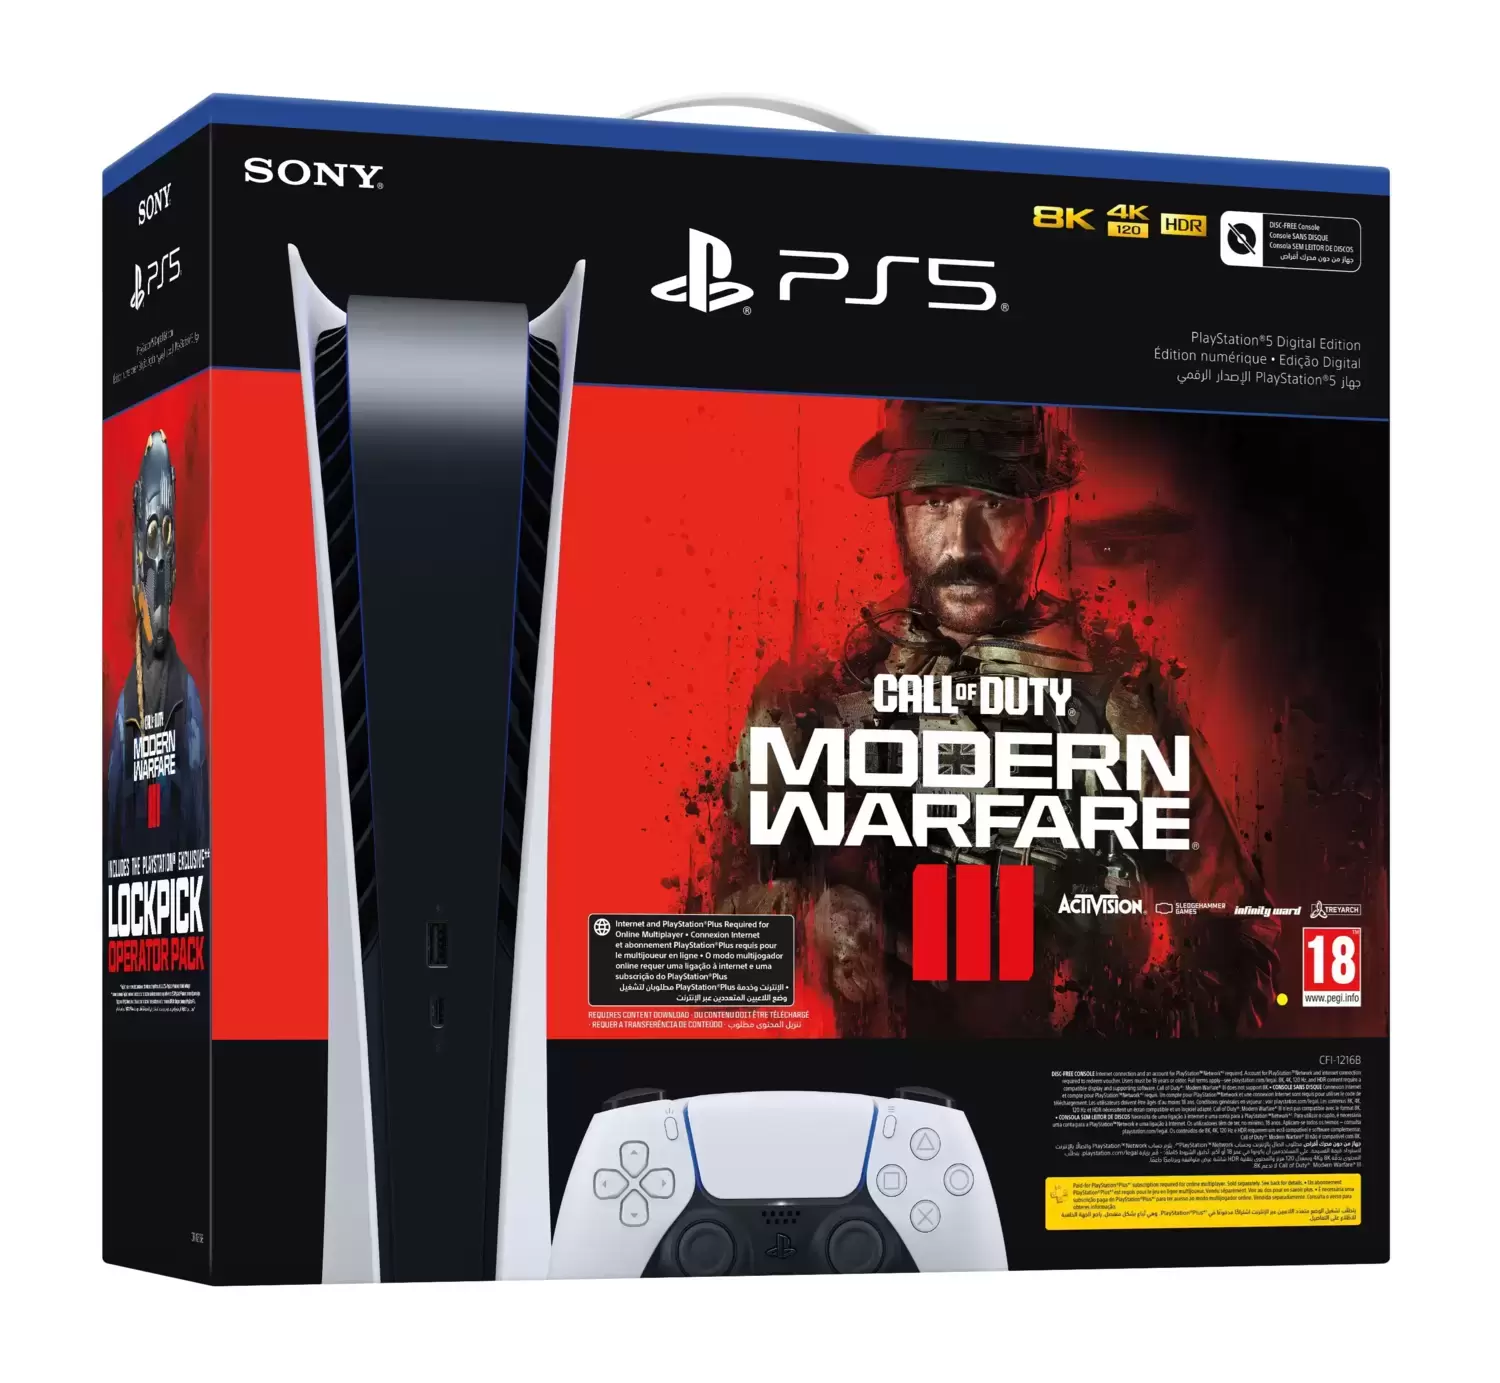 Matériel PS5 - Pack PS5 Alldigital Modern Warfare III